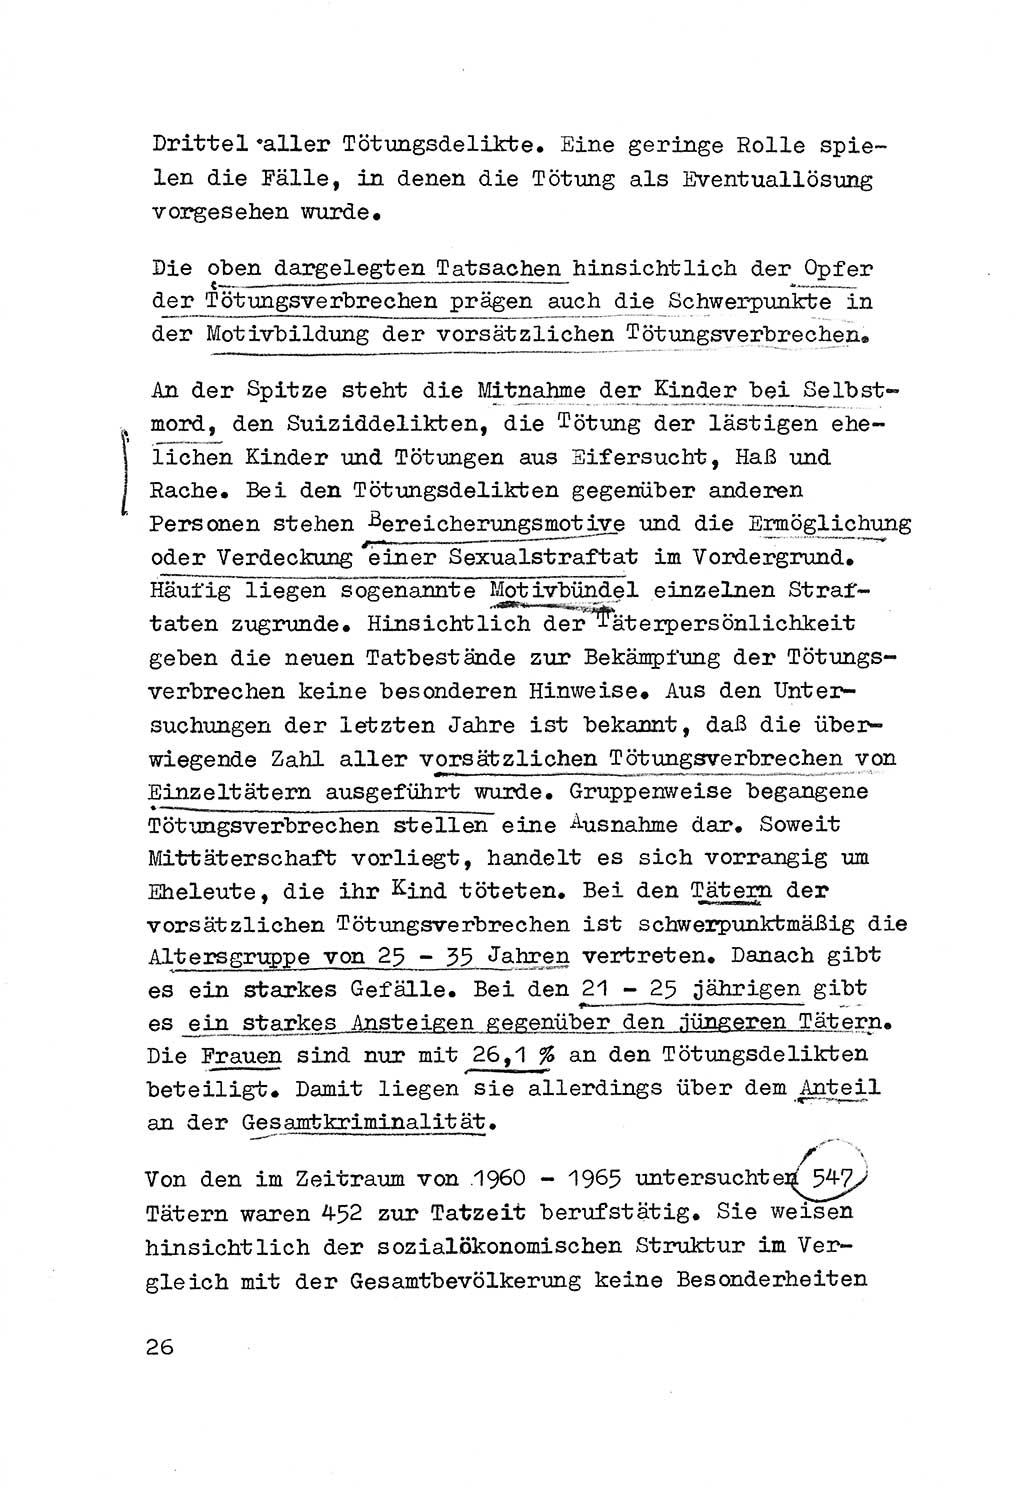 Strafrecht der DDR (Deutsche Demokratische Republik), Besonderer Teil, Lehrmaterial, Heft 3 1969, Seite 26 (Strafr. DDR BT Lehrmat. H. 3 1969, S. 26)